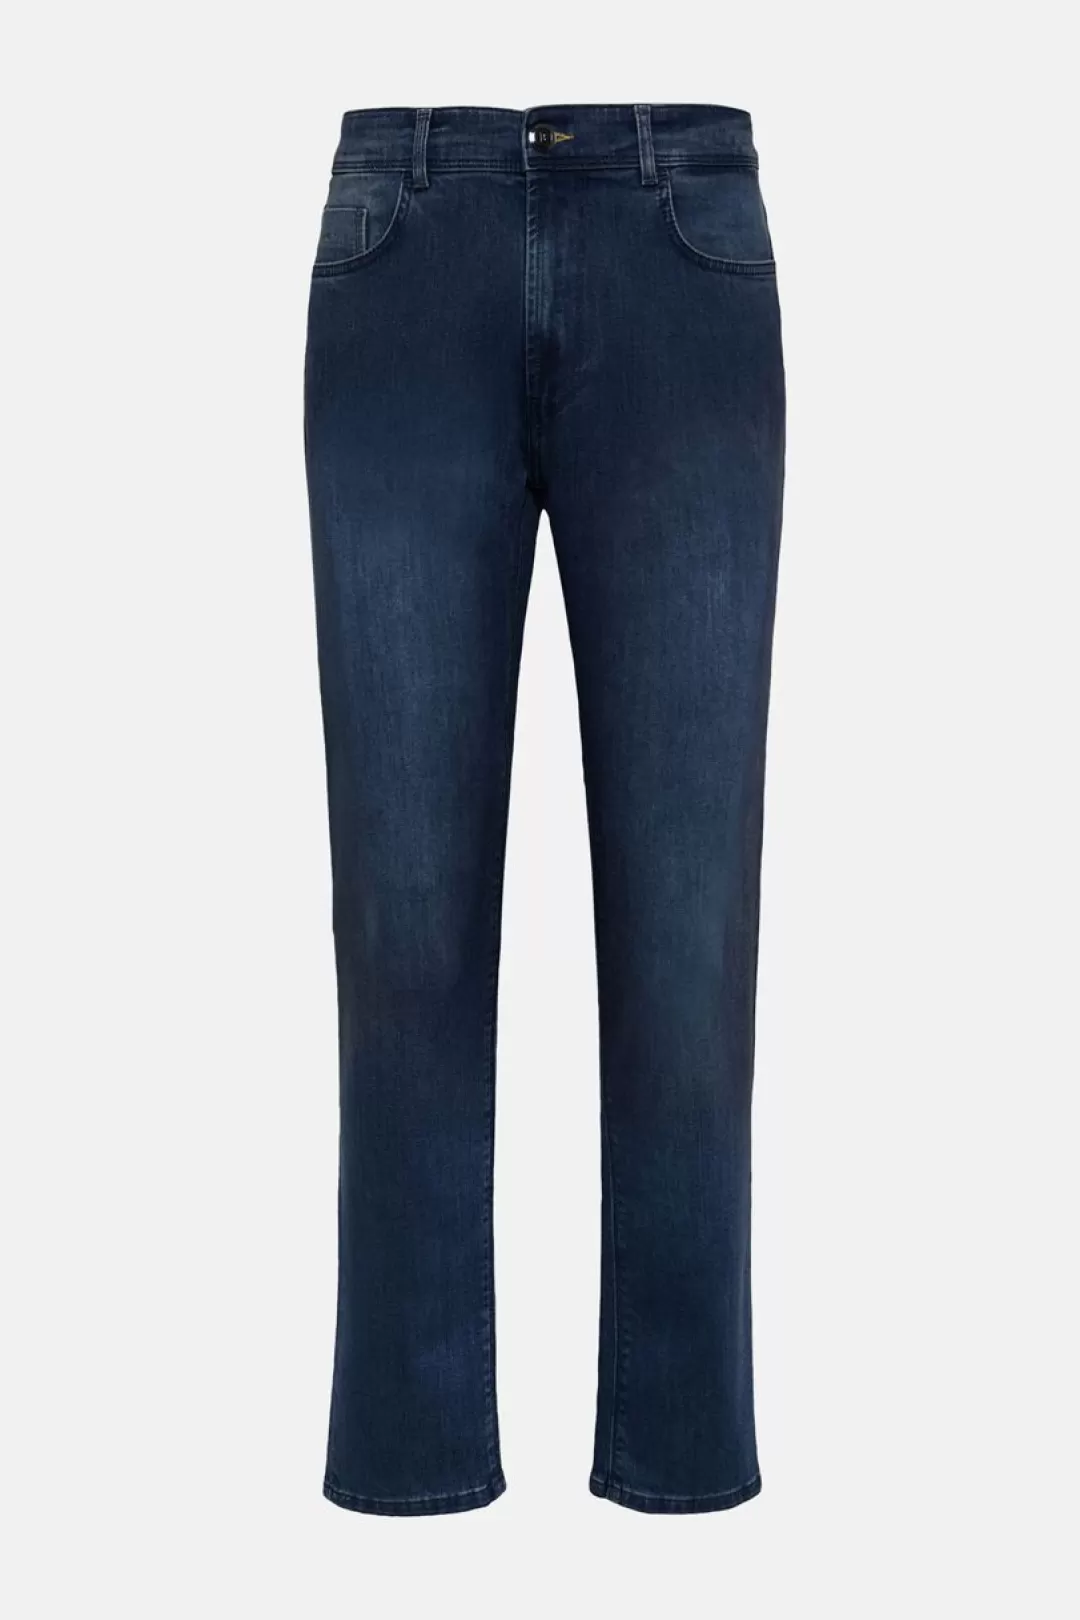 Boggi Jeans In Denim Elasticizzato Blu Scuro Indaco Scuro Flash Sale